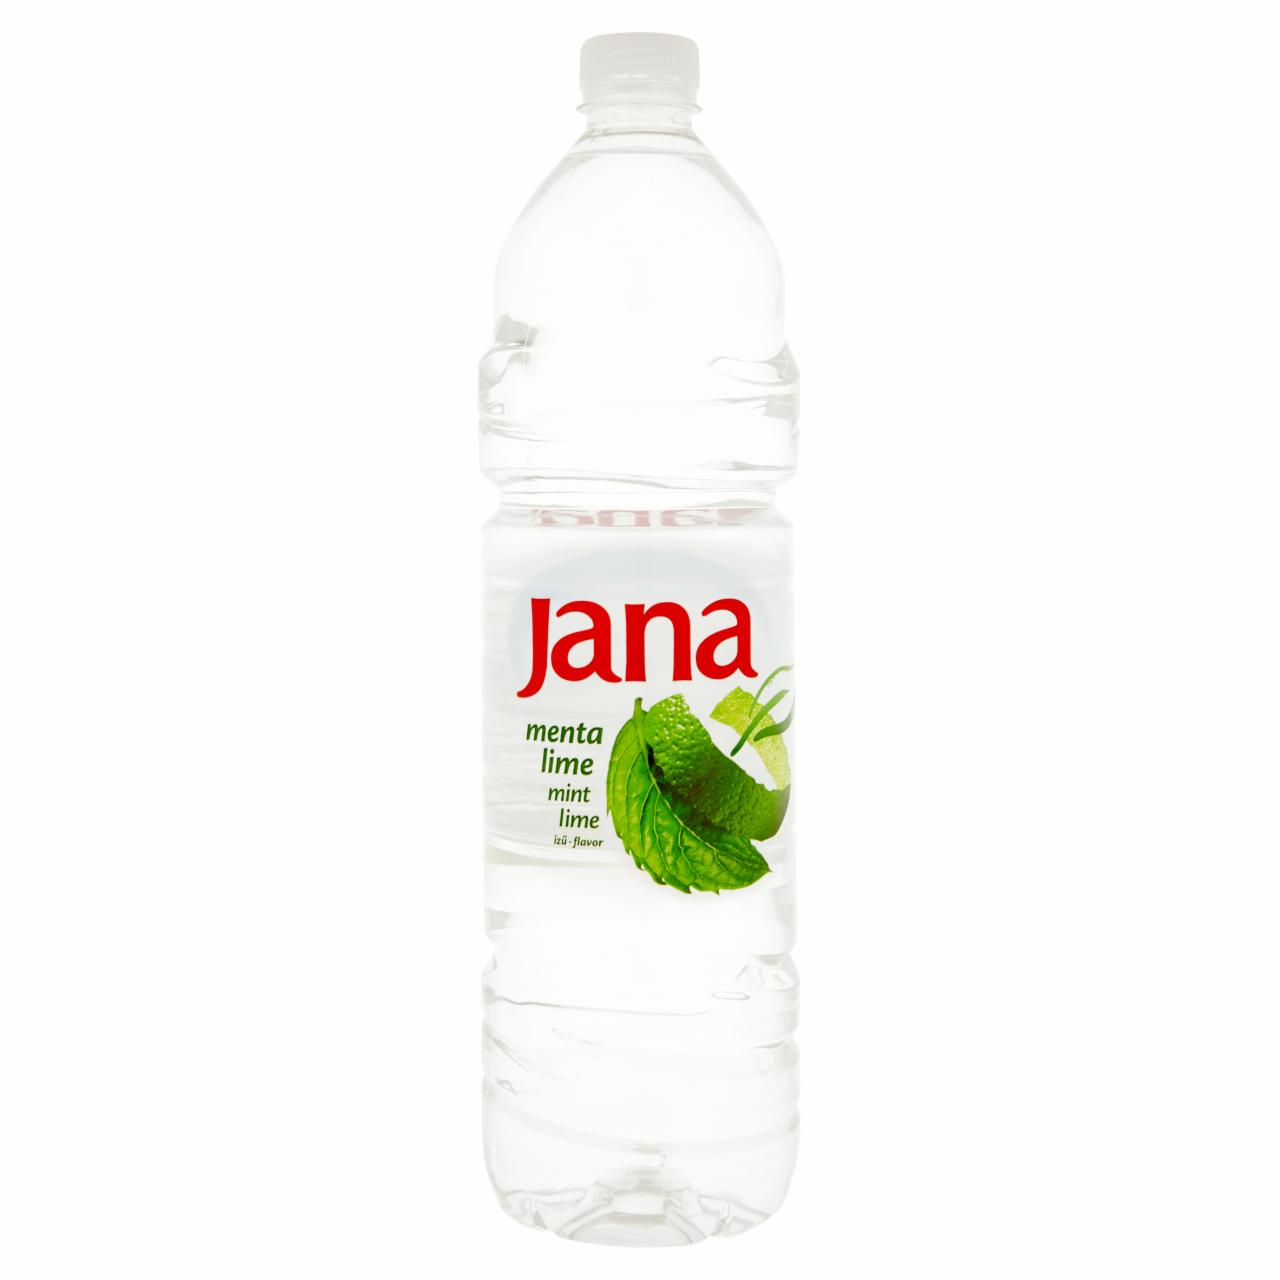 Képek - Jana menta-lime ízű szénsavmentes üdítőital 1,5 l